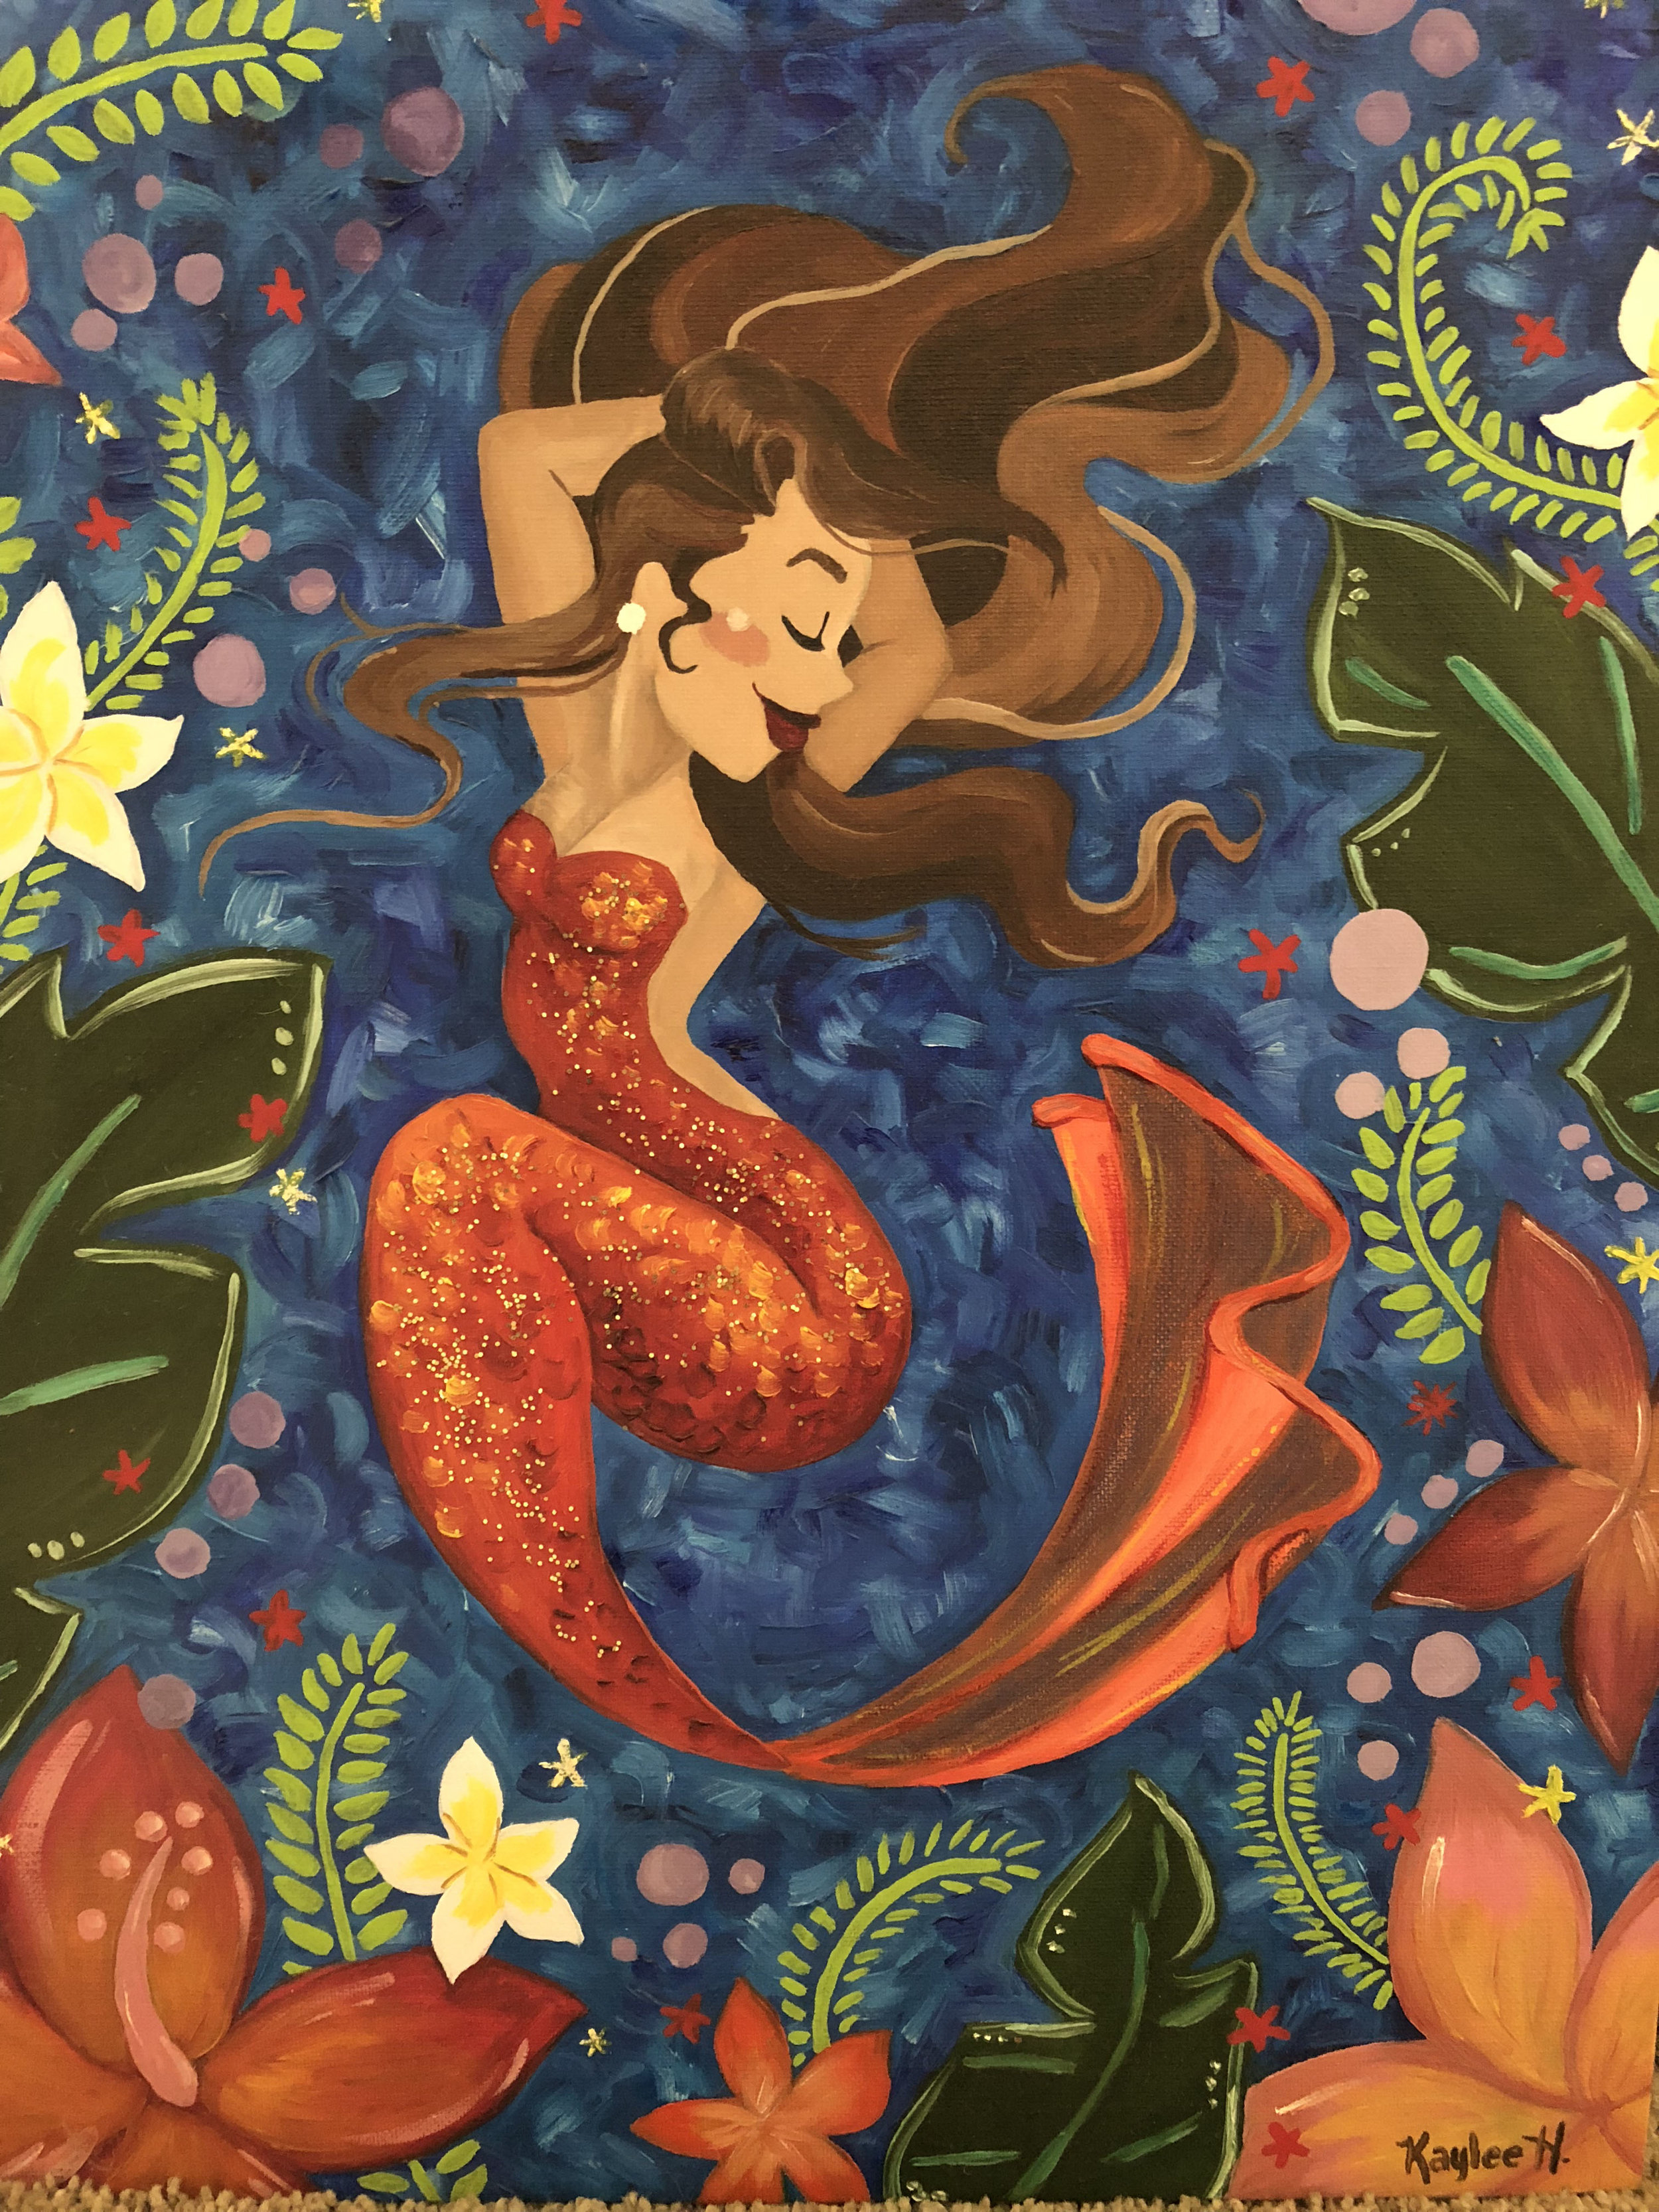 Tropical Mermaid